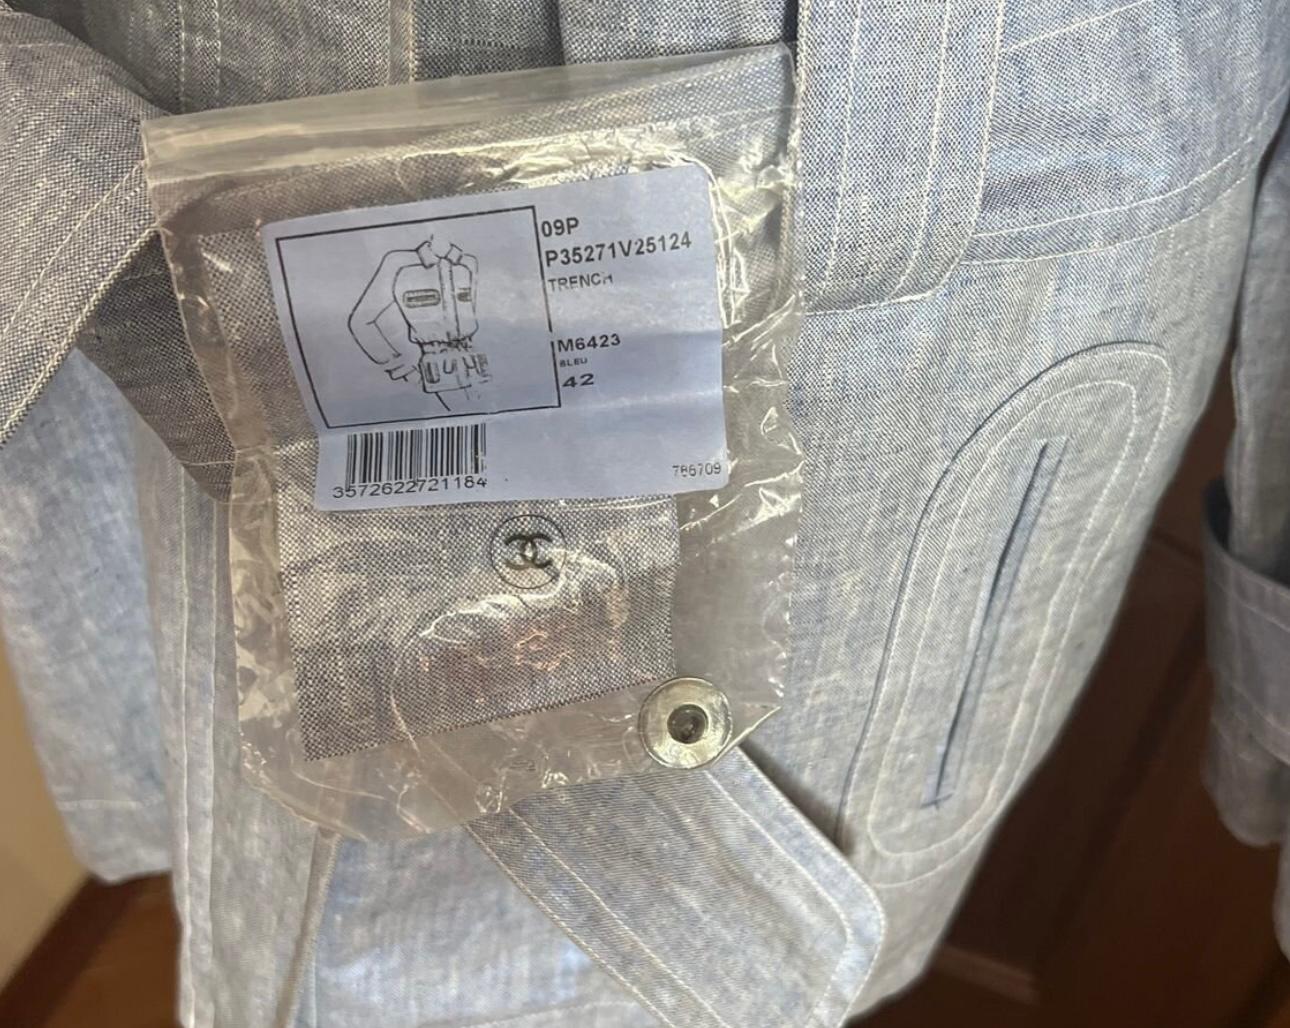 New Chanel Blauer Jeansmantel mit Gürtel und CC-Logo-Knöpfen
Kommt mit Chanel-Papieretui. 
Größenbezeichnung 42 FR.